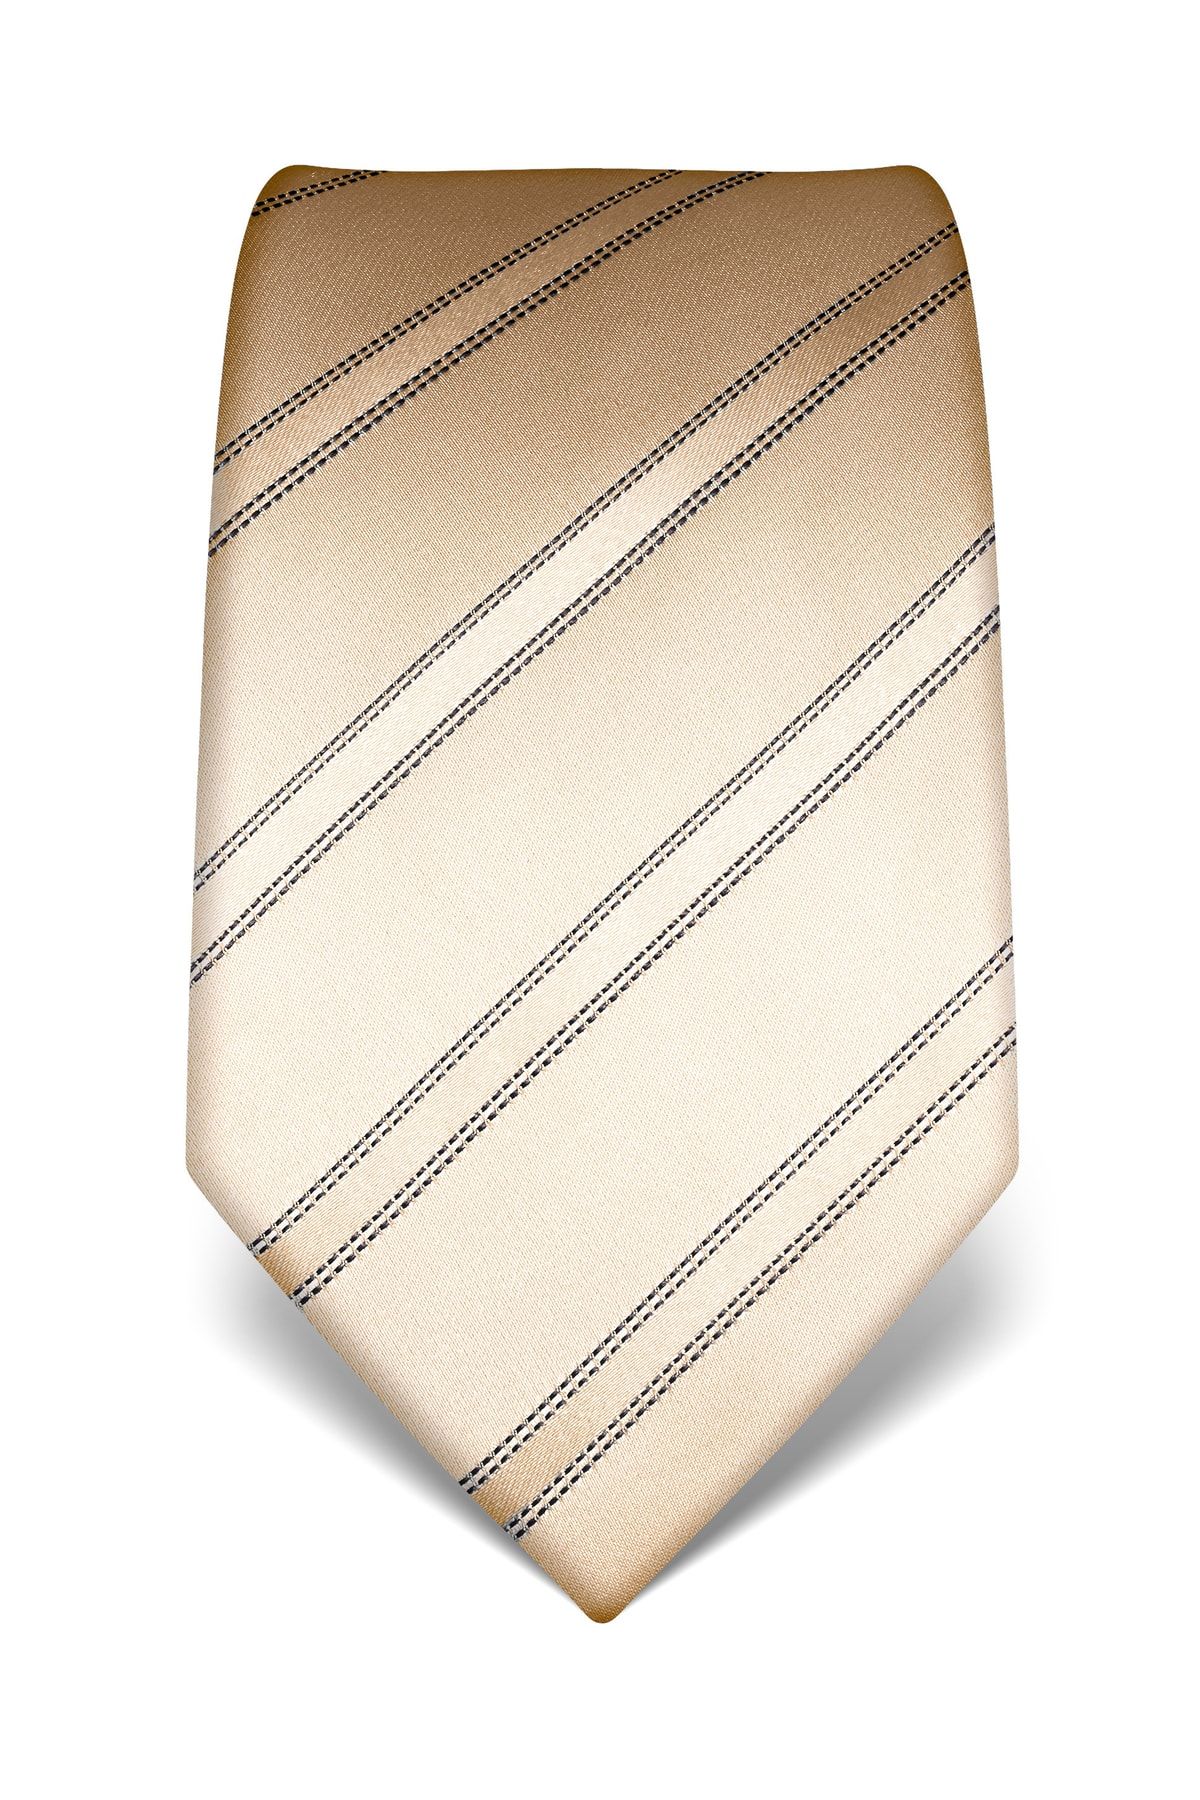 Krawatte Business Vincenzo Boretti Beige